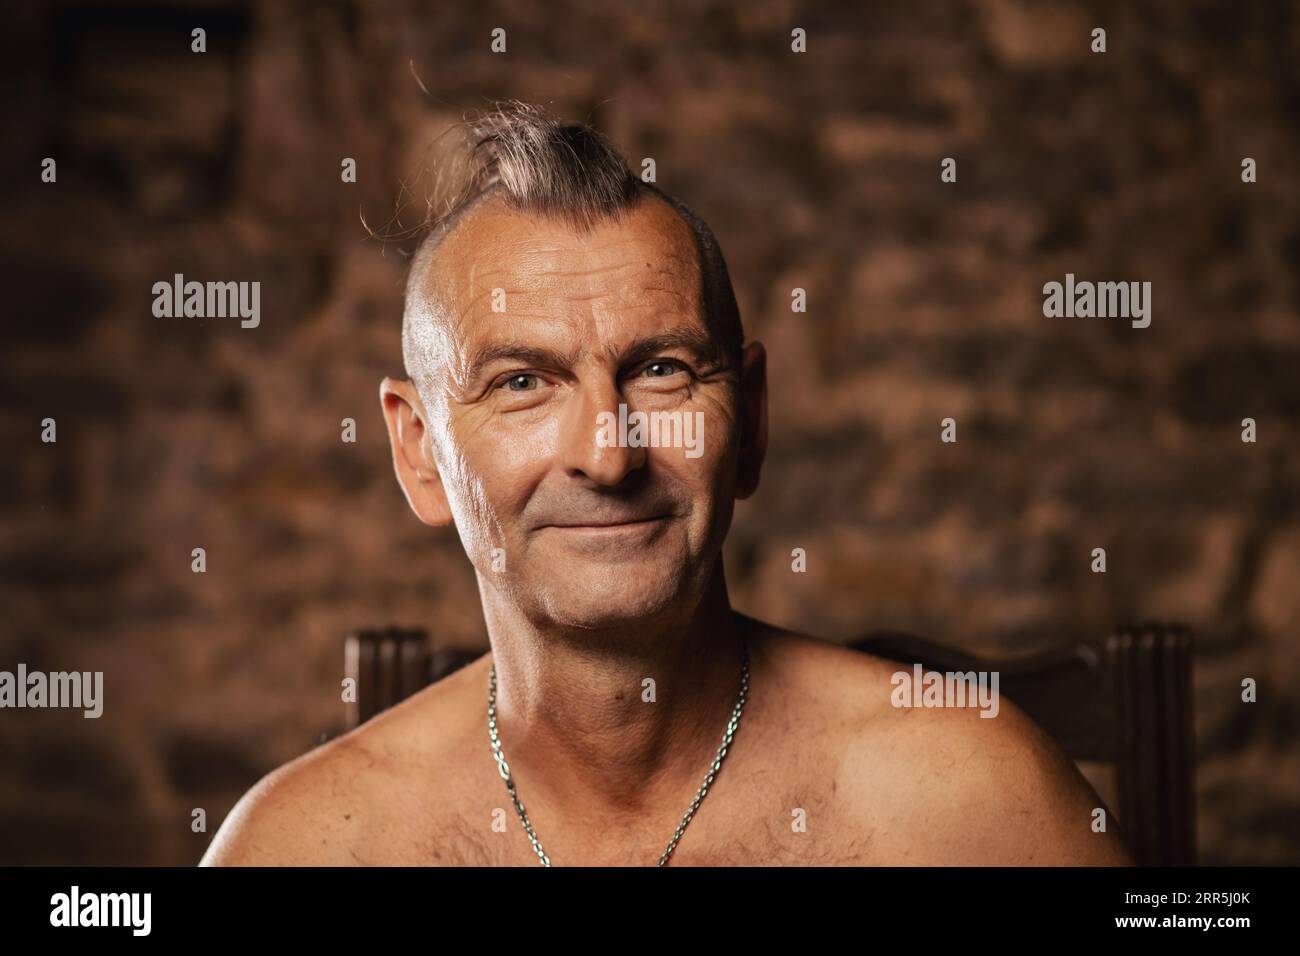 Un homme plus âgé satisfait, âgé de soixante ans, sourit et regarde la caméra. Banque D'Images